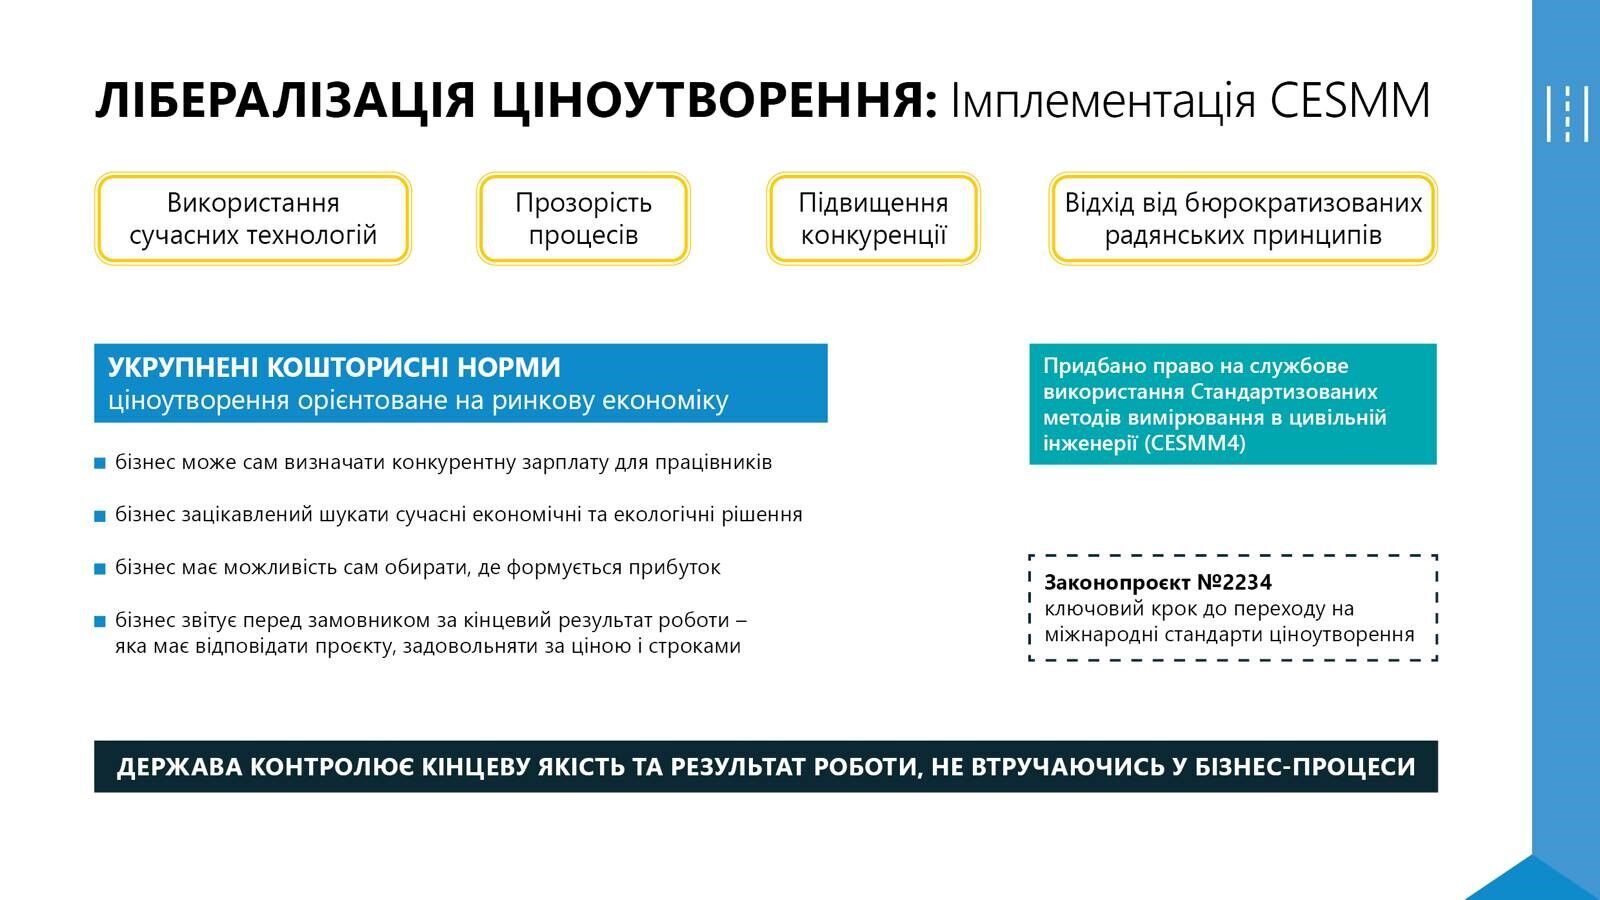 Наступним кроком реформи стане впровадження в Україні міжнародних стандартів ціноутворення